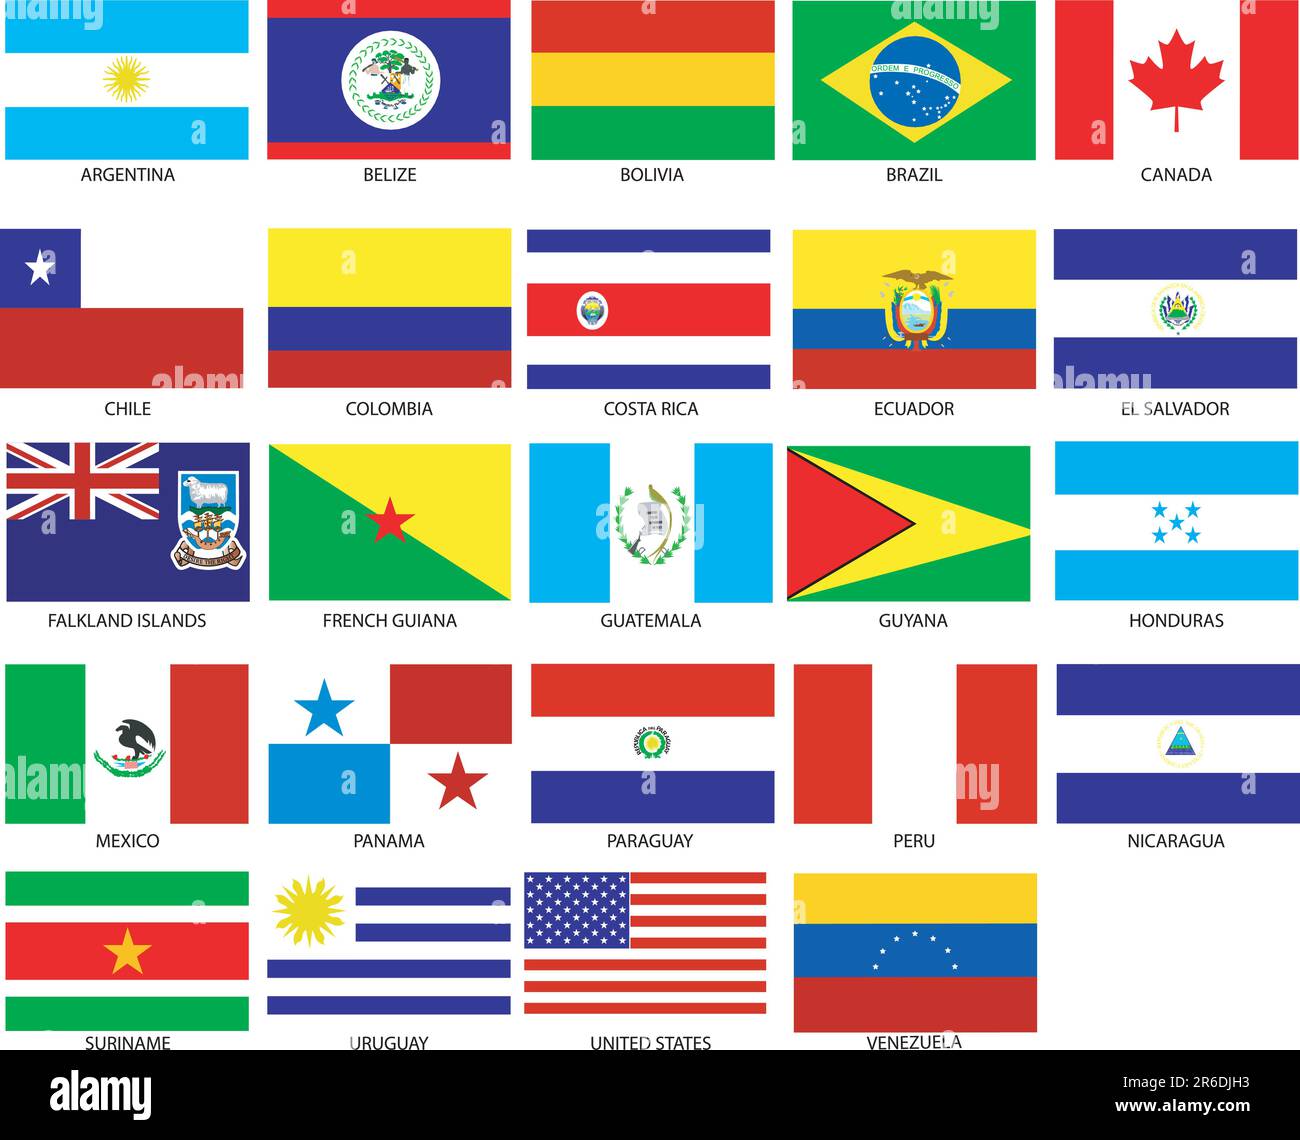 24 der amerikanischen Flaggen. Vektordarstellung der Flaggen verschiedener Länder der Welt. Sie sind nach Ort geordnet, dann alphabetisch in ... Stock Vektor